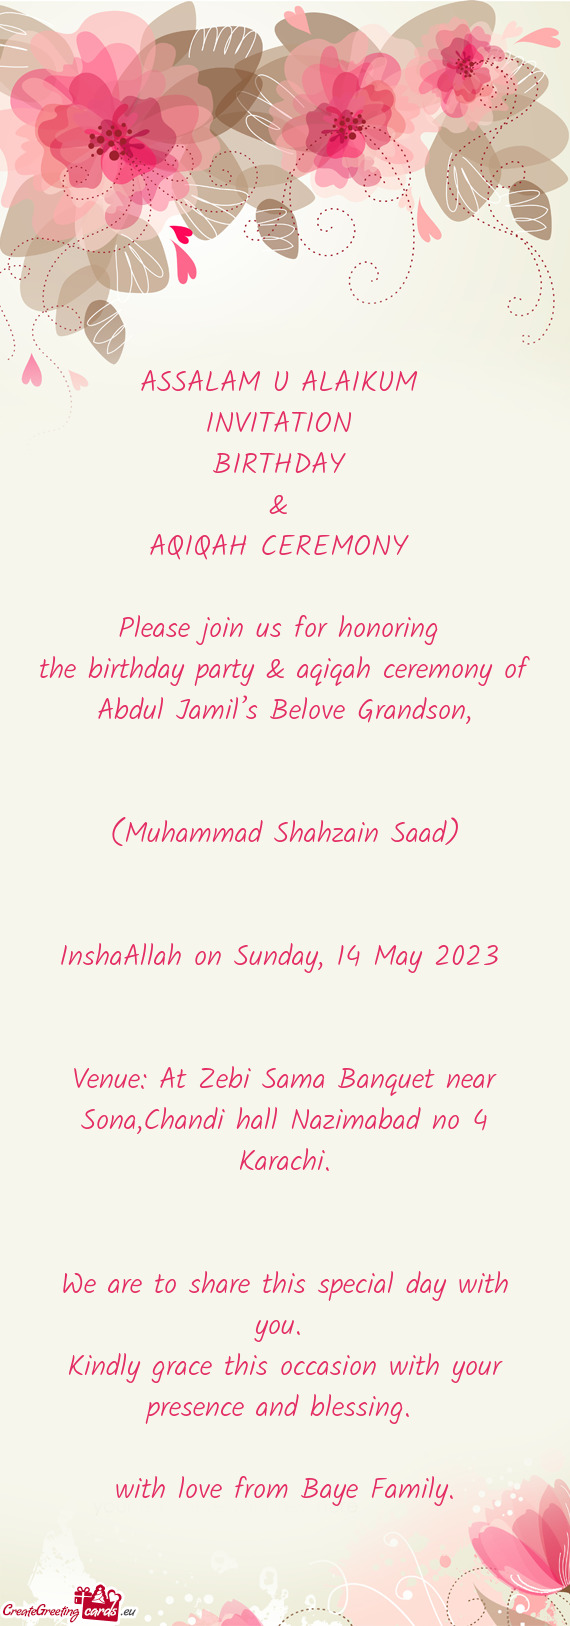 InshaAllah on Sunday, 14 May 2023